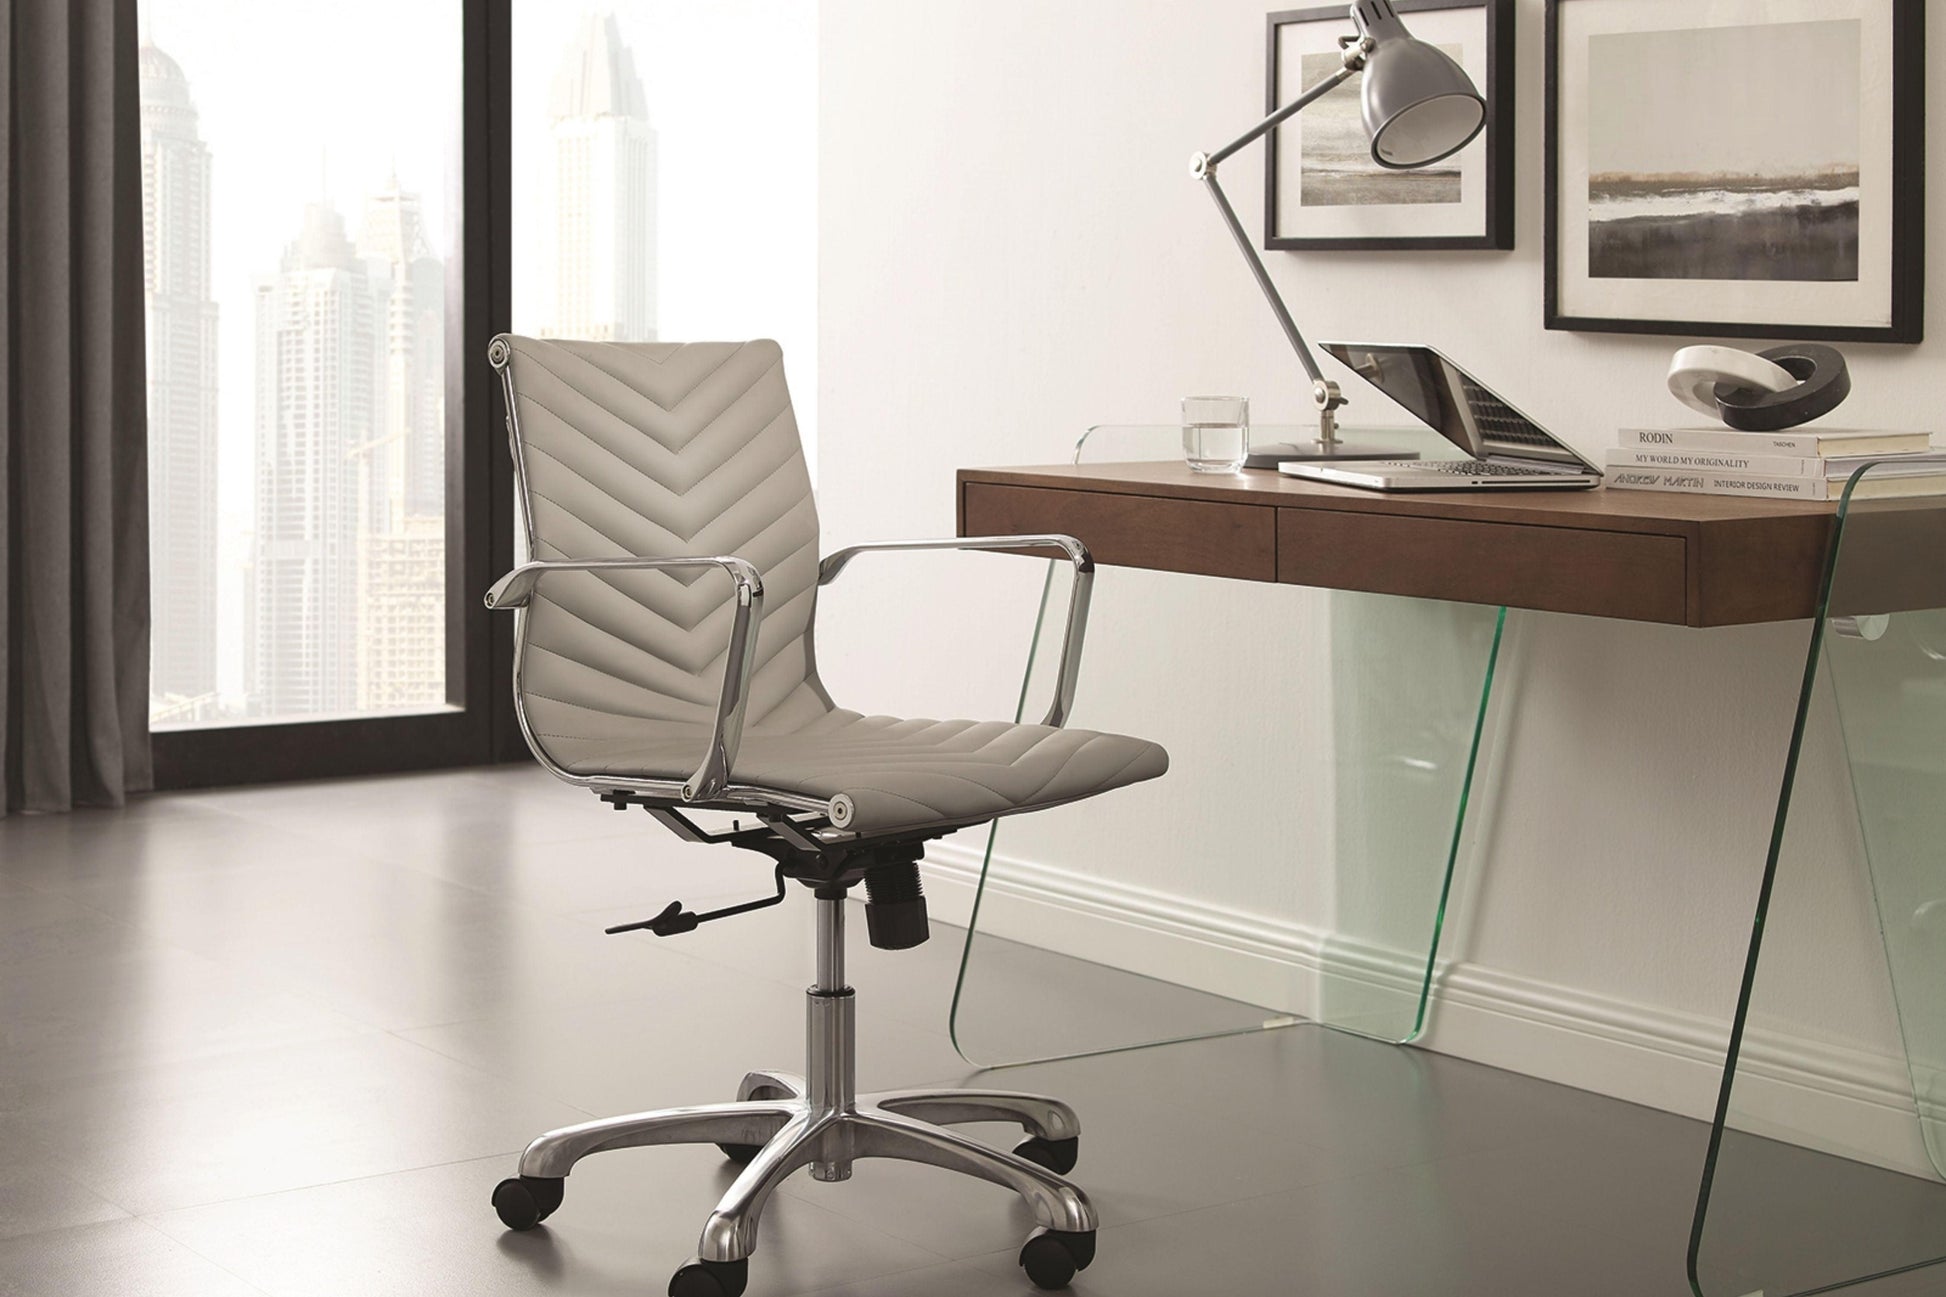 Archie Office Desk Walnut and White Model CB-786GR - Venini Furniture 